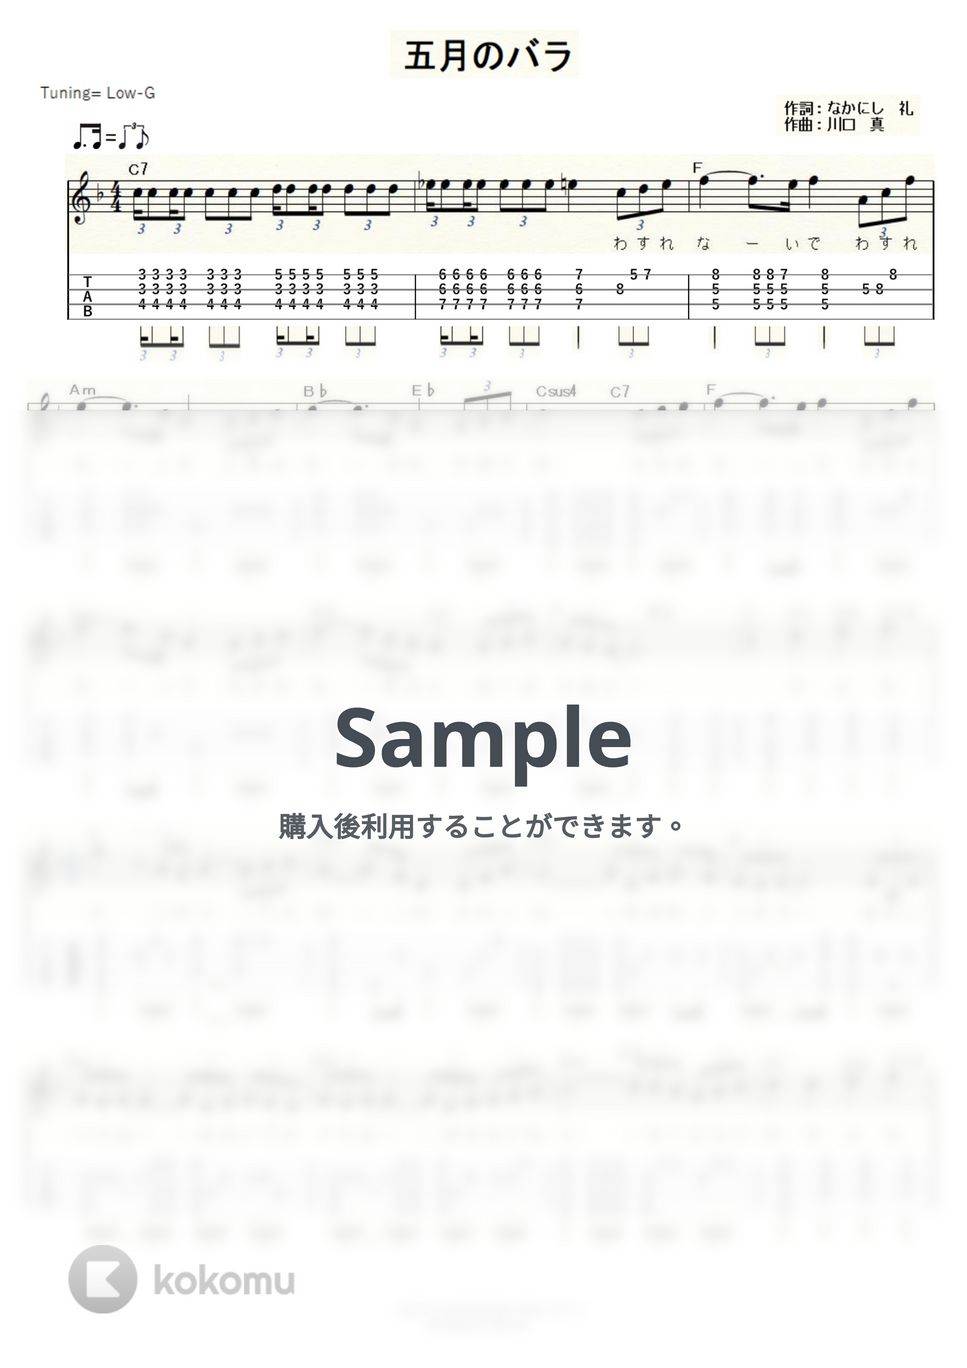 津川 晃 - 五月のバラ (ｳｸﾚﾚｿﾛ/Low-G/中級) by ukulelepapa